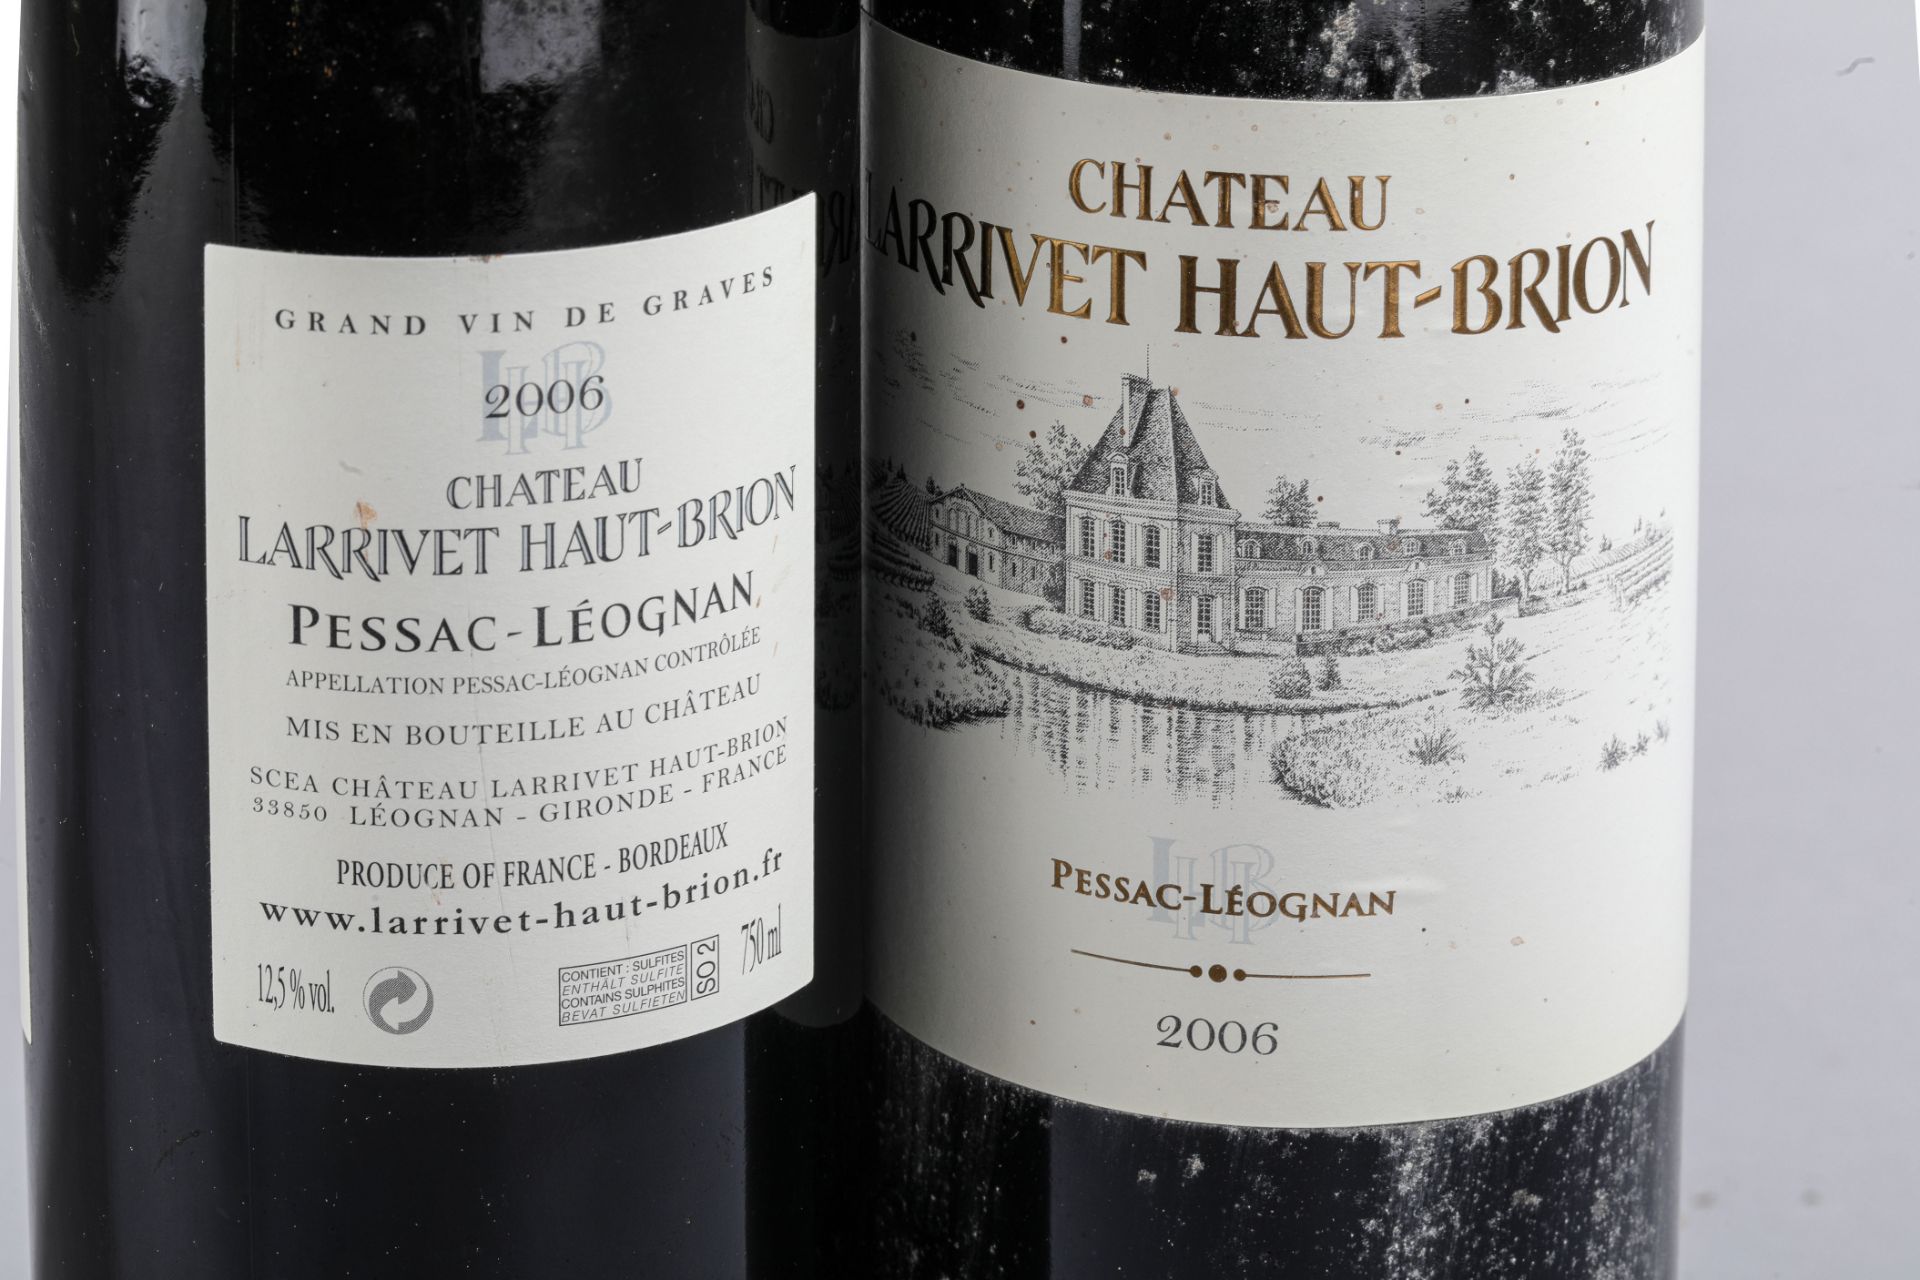 CHÂTEAU LARRIVET HAUT BRION. 2006. 2 bouteilles. Pessac Léognan. - Image 3 of 4